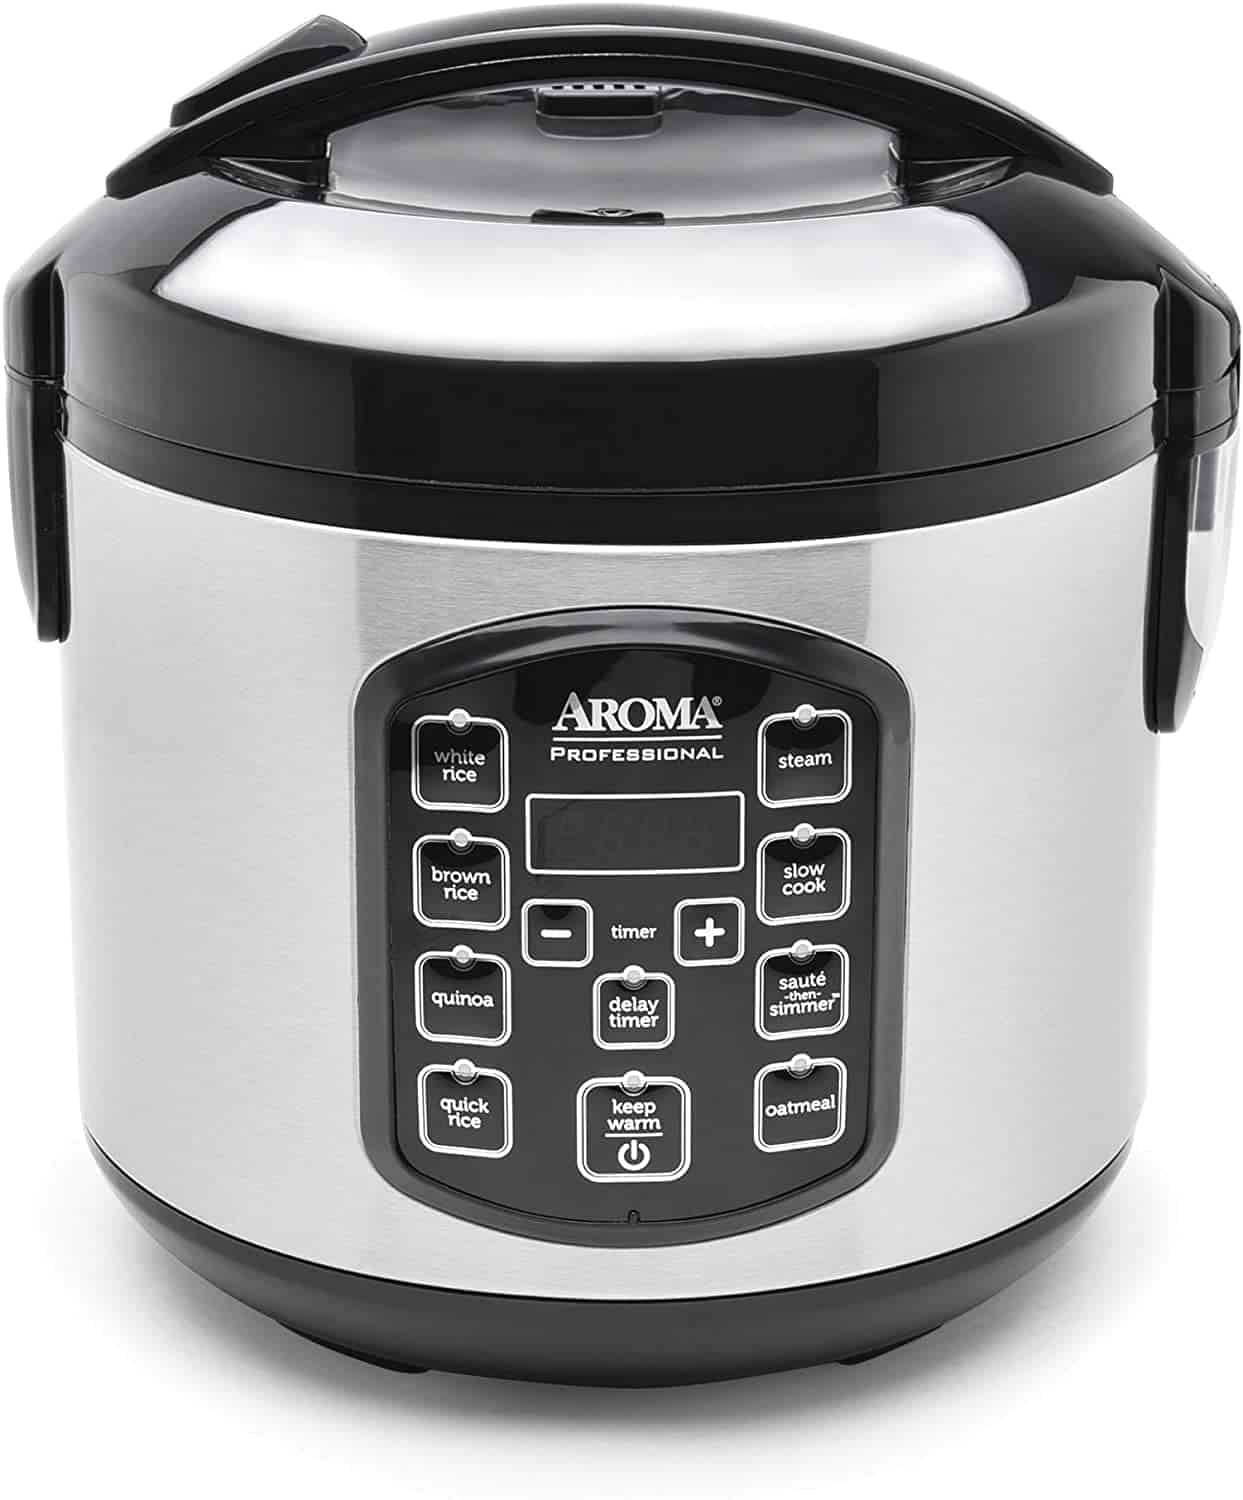 Melhor panela elétrica de arroz: Aroma Housewares ARC-954SBD